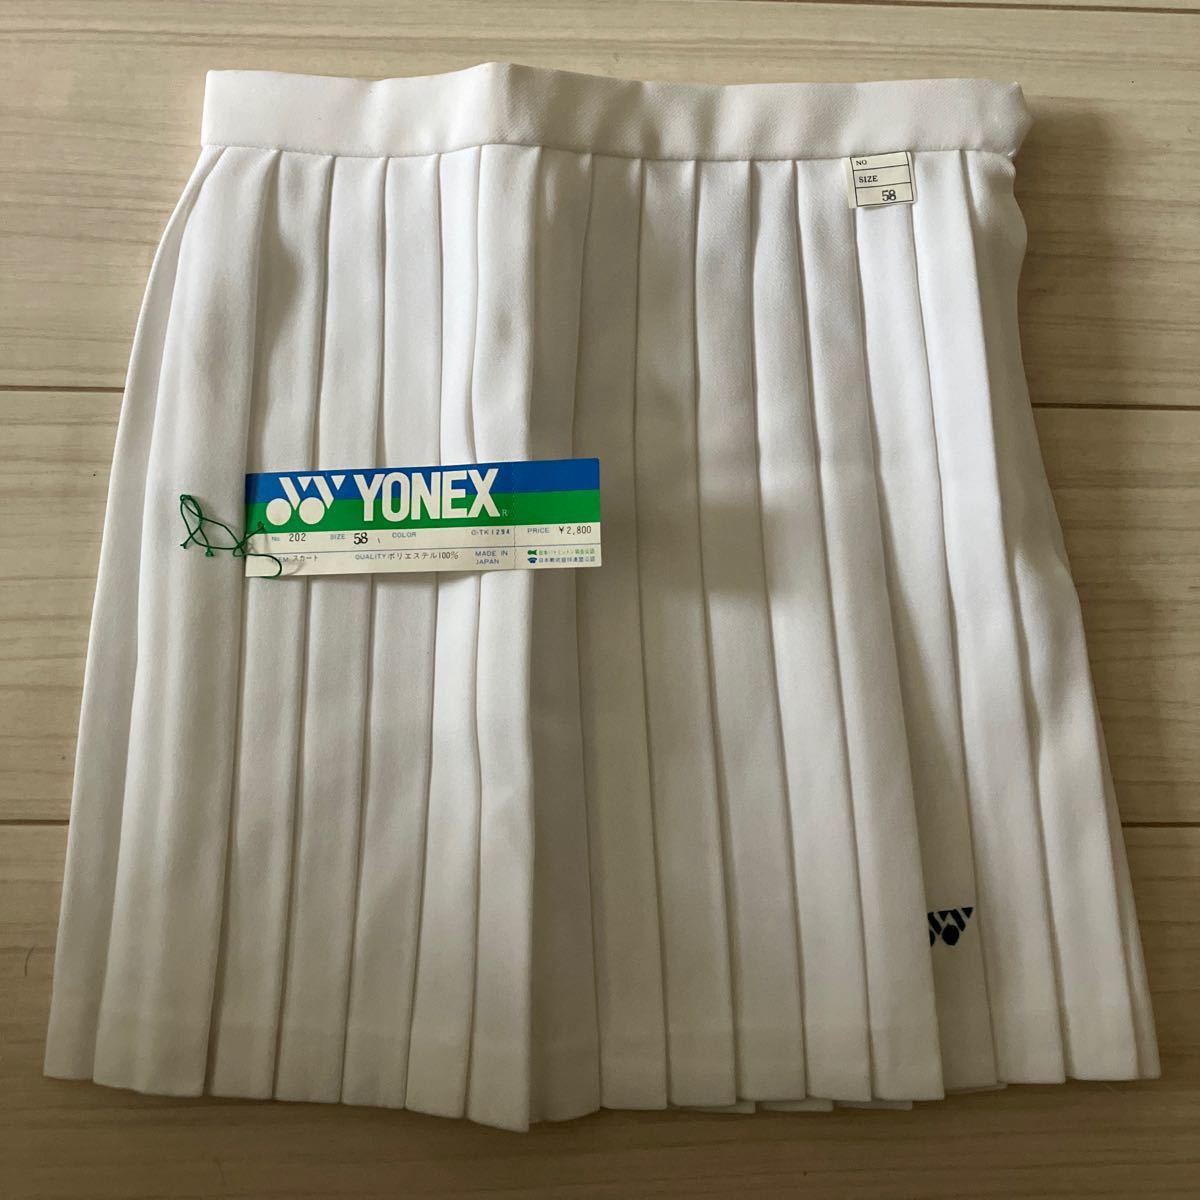  новый товар не использовался неиспользуемый товар YONEX Yonex No.202 юбка юбка 58cm плиссировать белый спорт одежда теннис бадминтон 